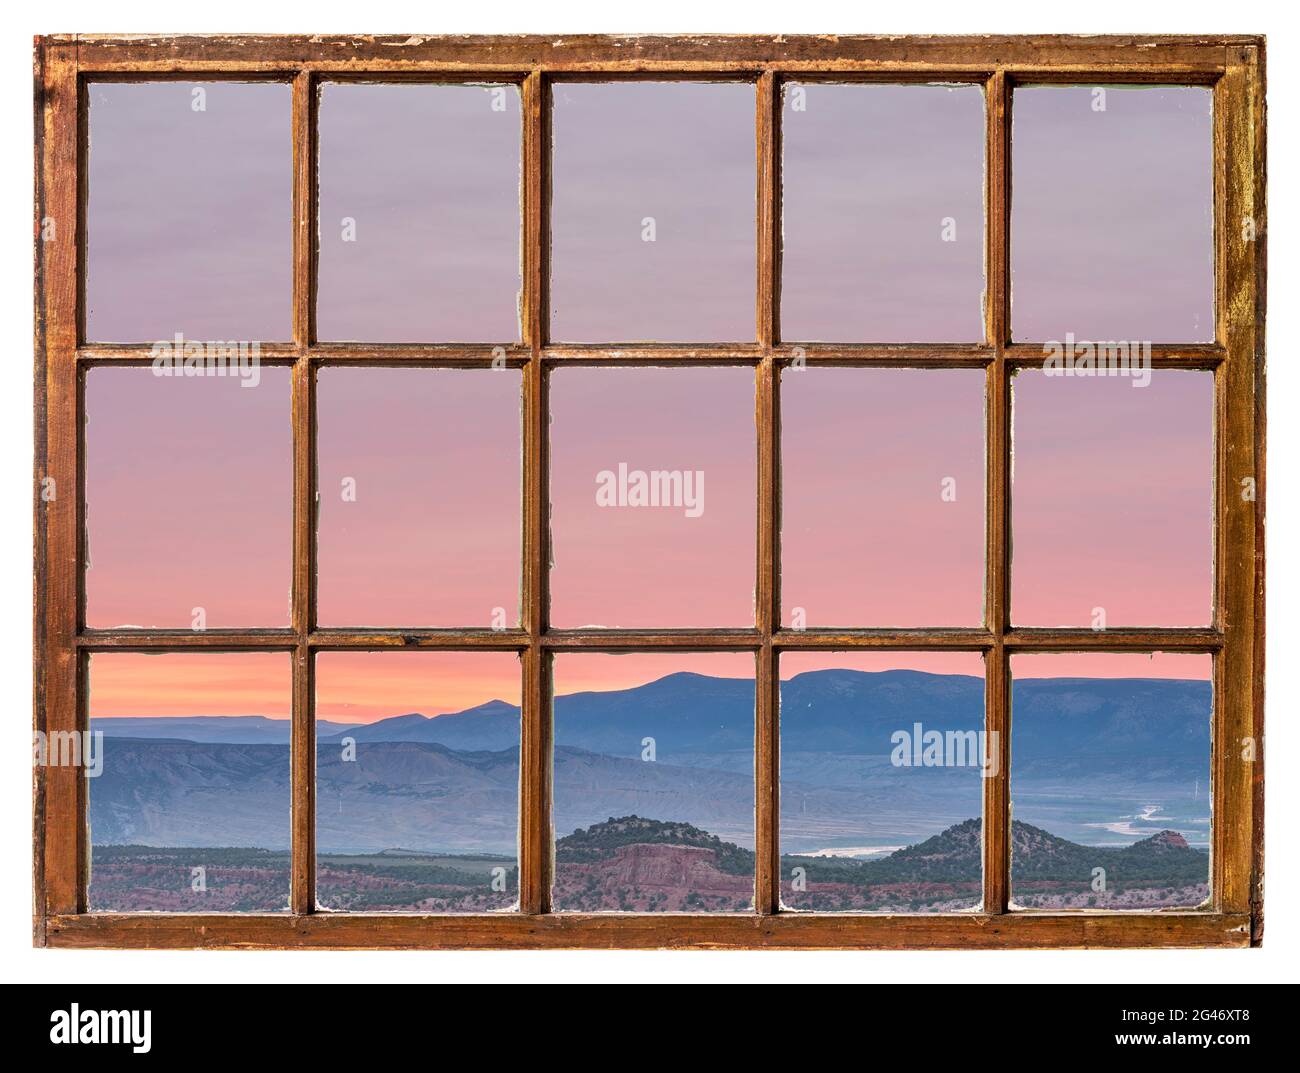 Farbenprächtiger Himmel bei Sonnenaufgang im Nordwesten Colorados, von einem alten Kabinenfenster aus gesehen Stockfoto